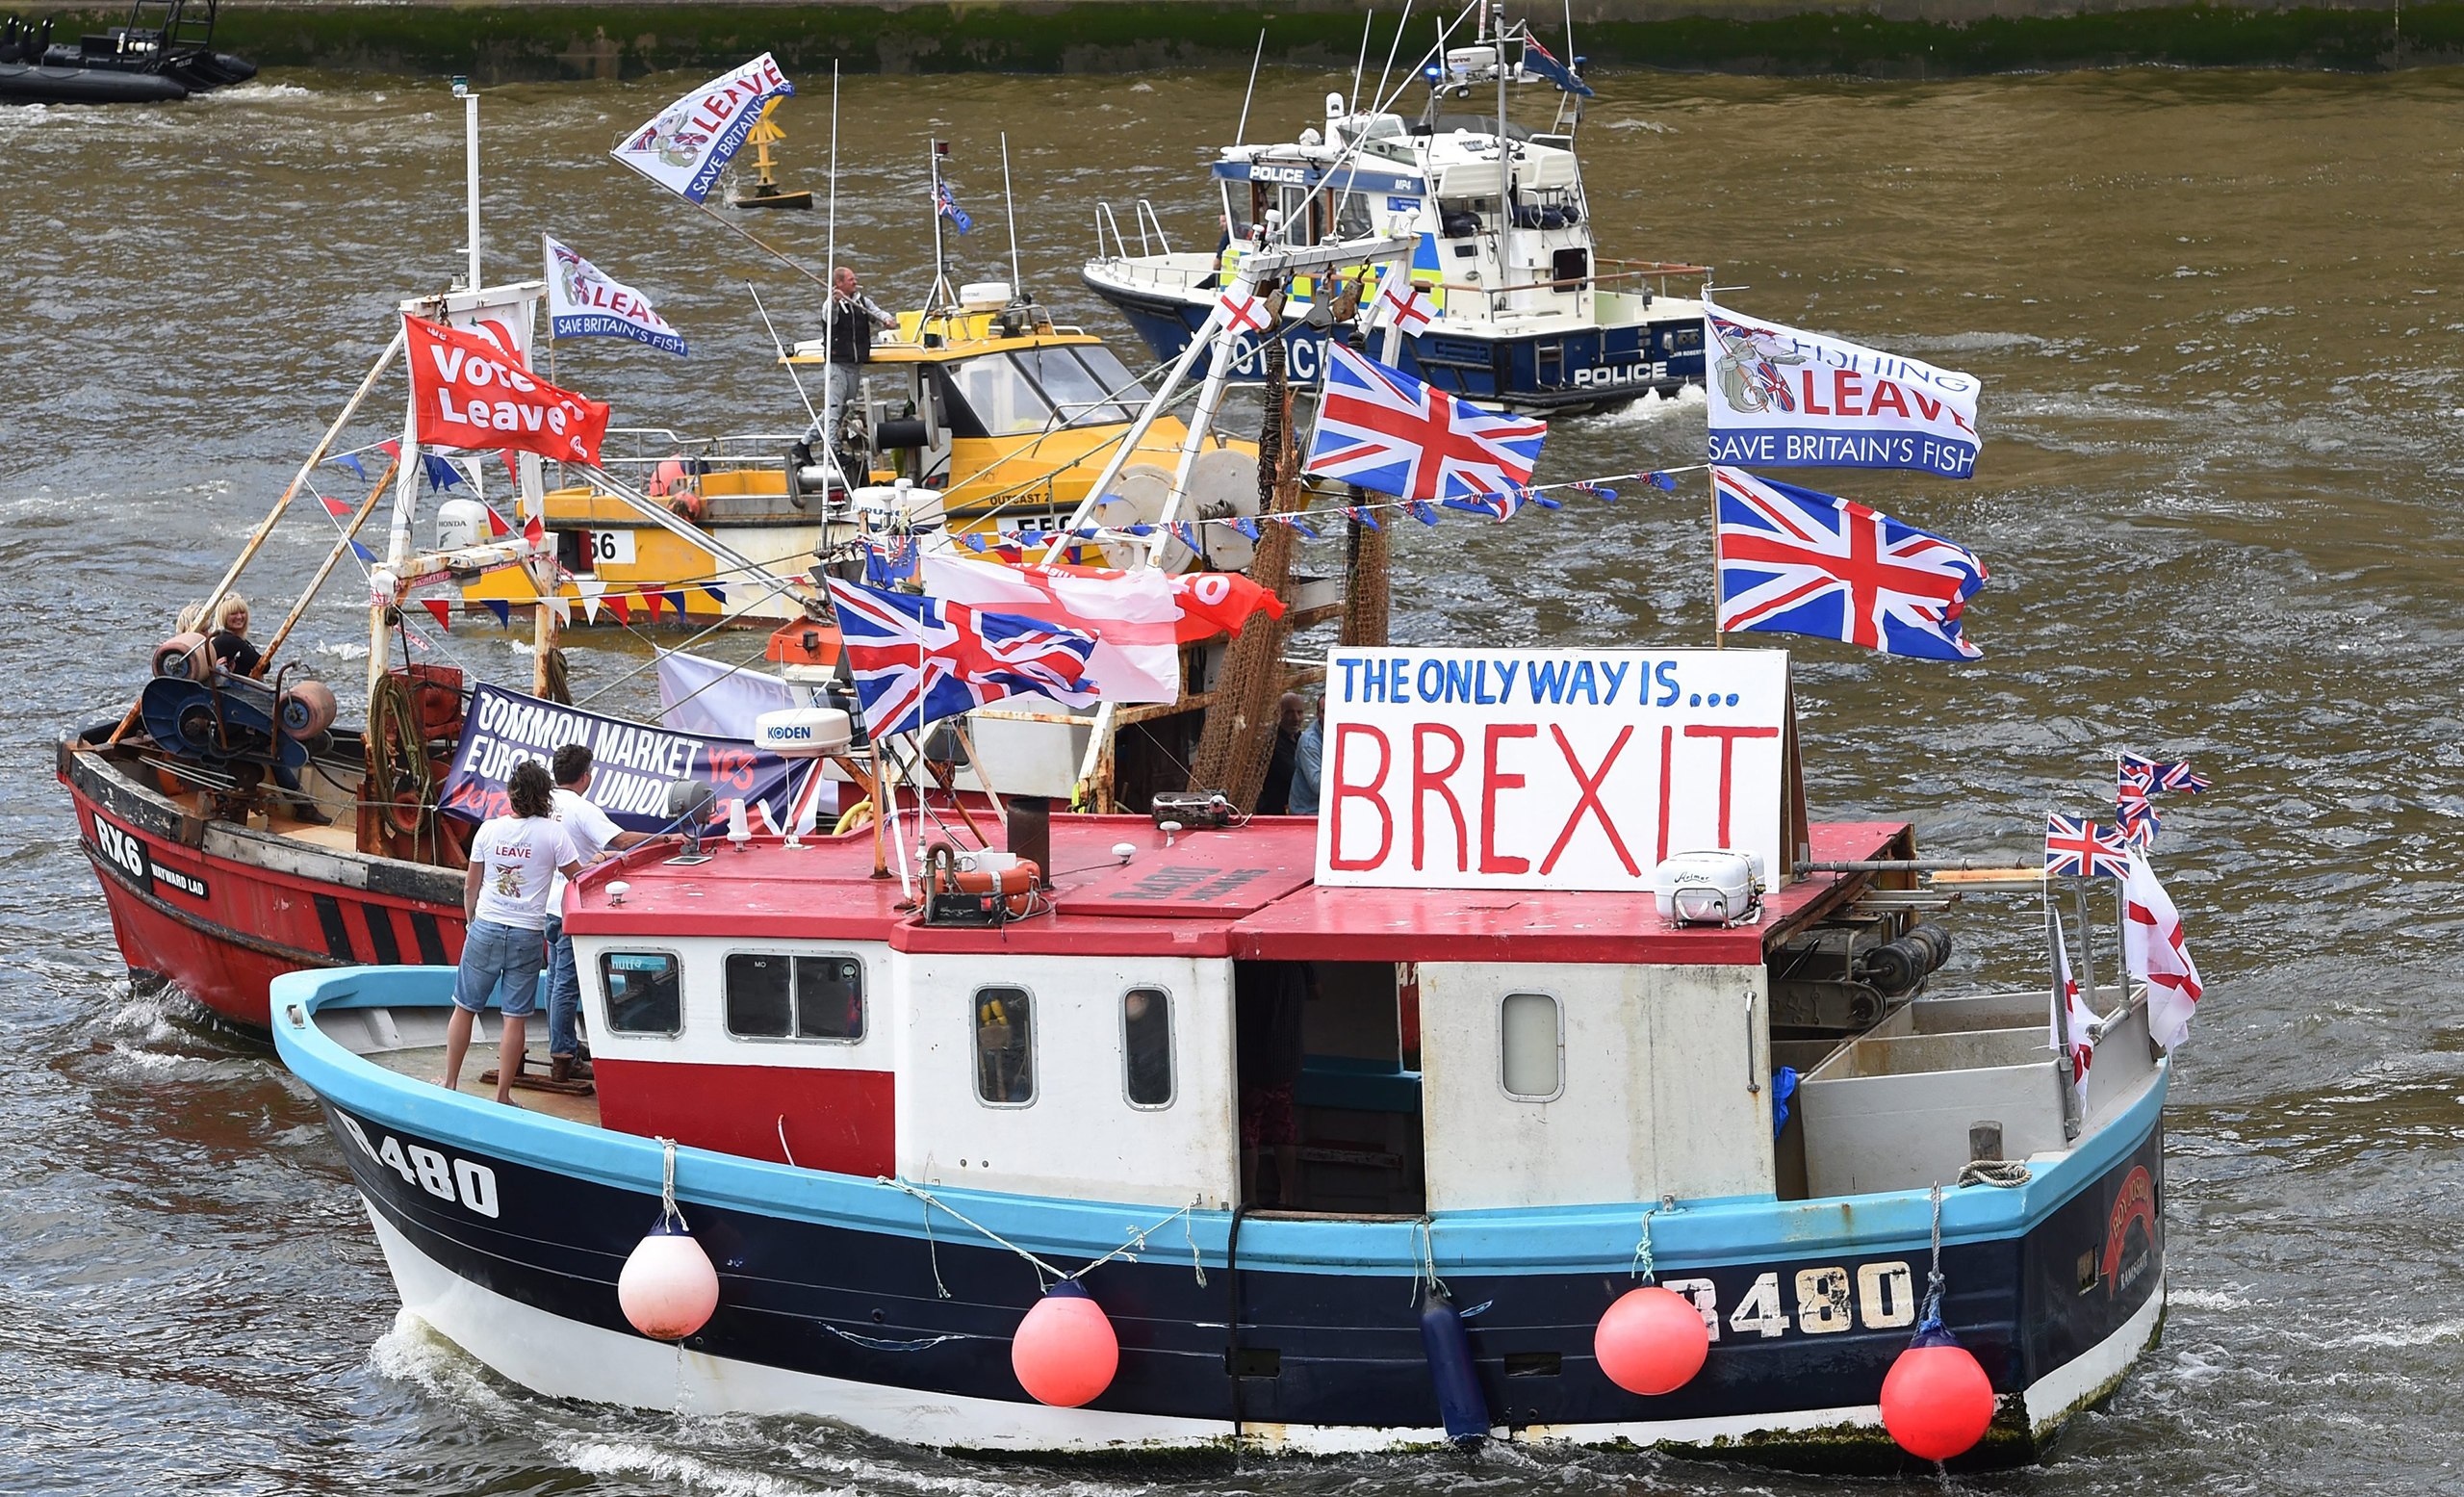 A Brexit Flotilla sails up the Thames